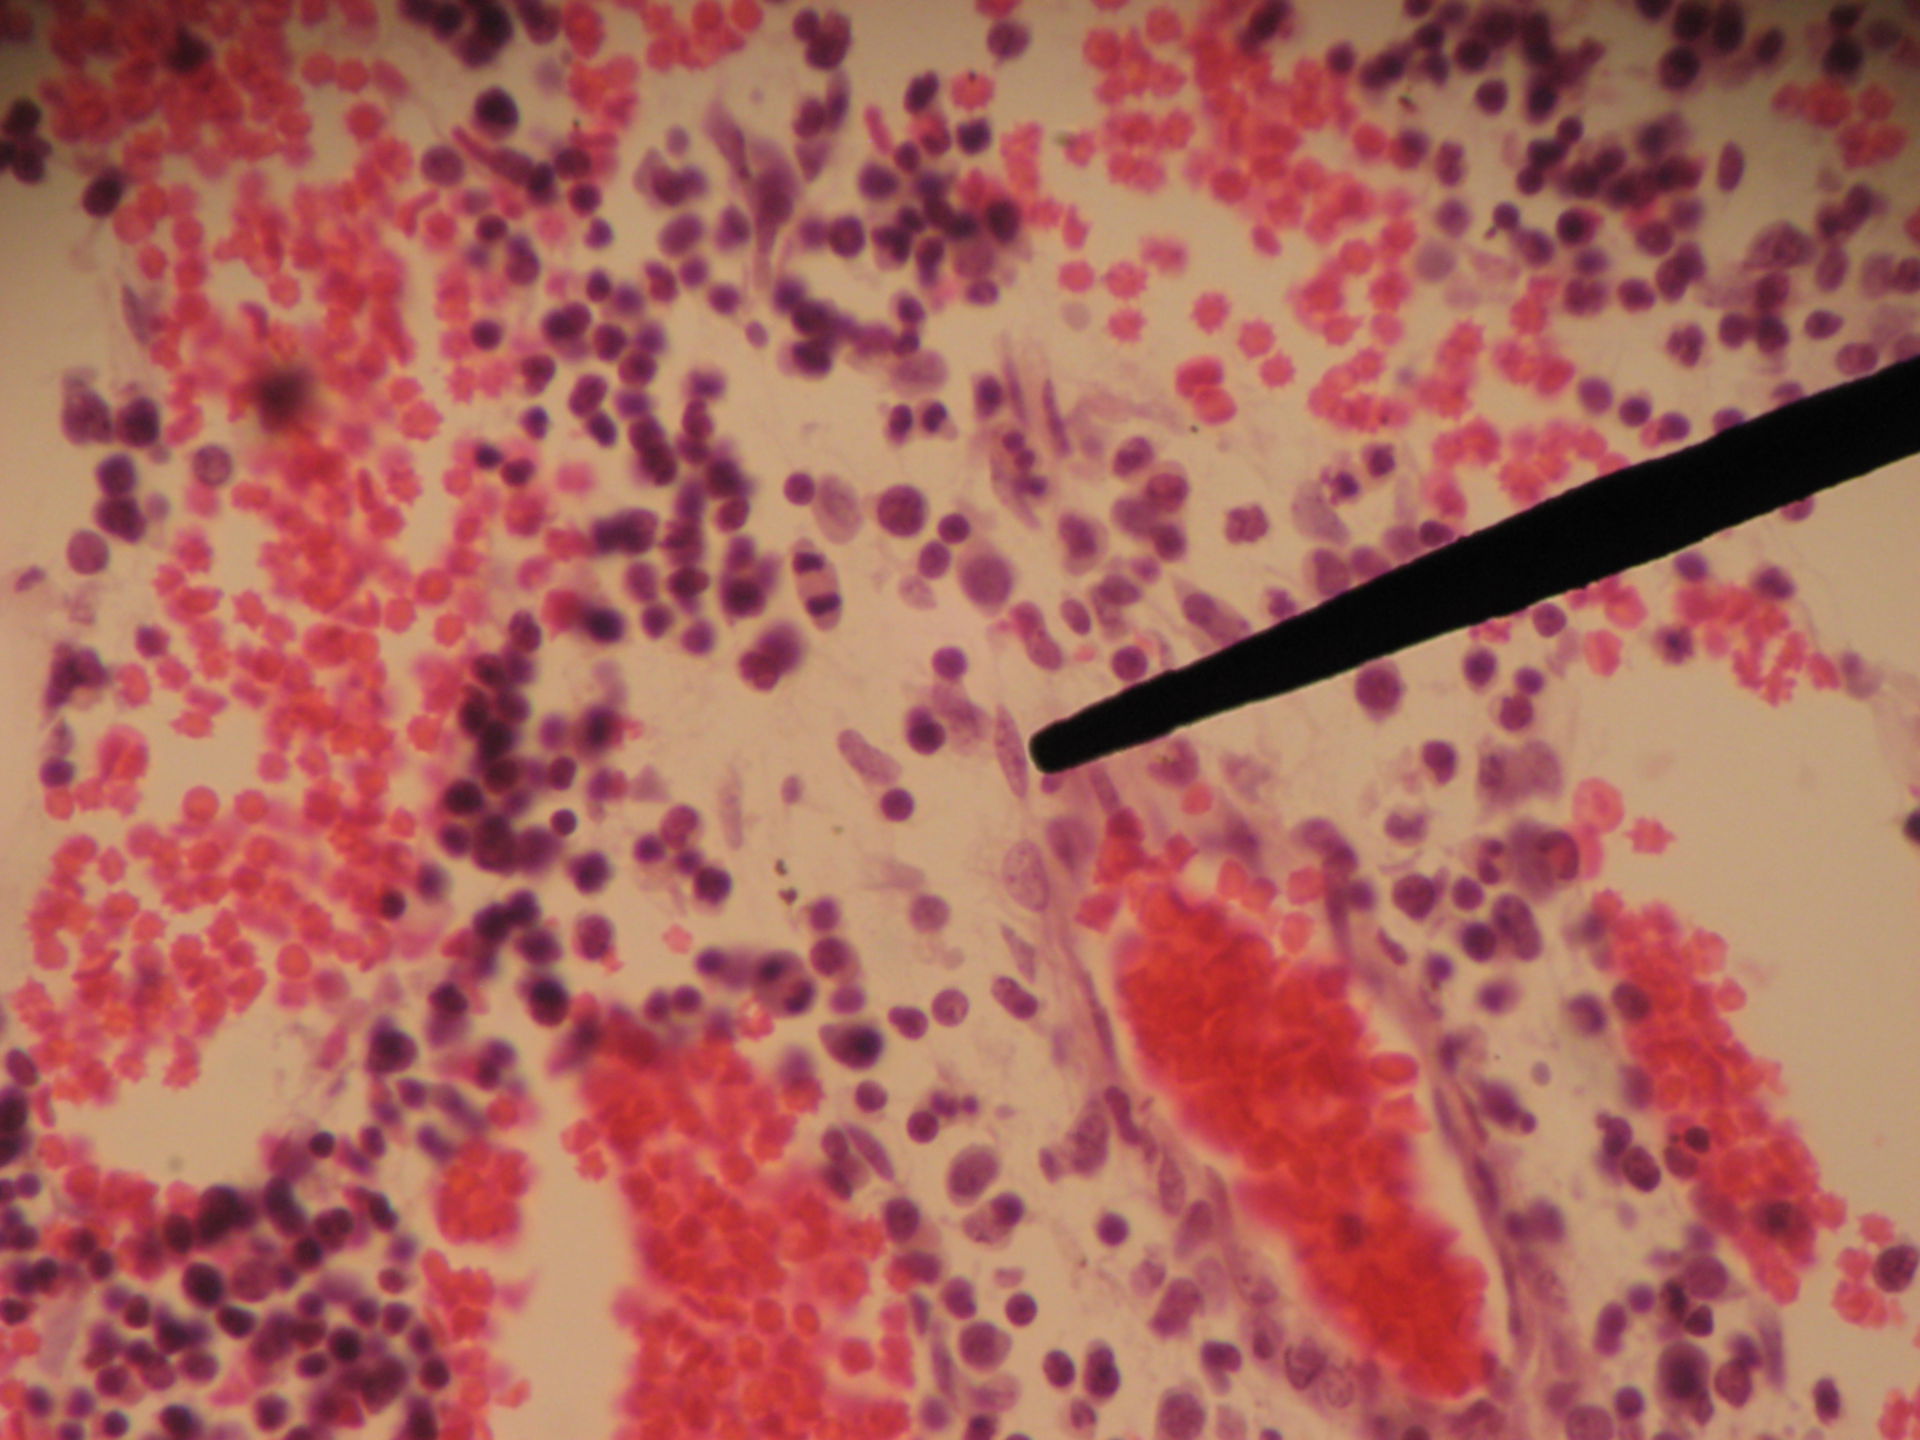 Rotes Knochenmark eines Schweinefetus (9) - Retikulumzelle